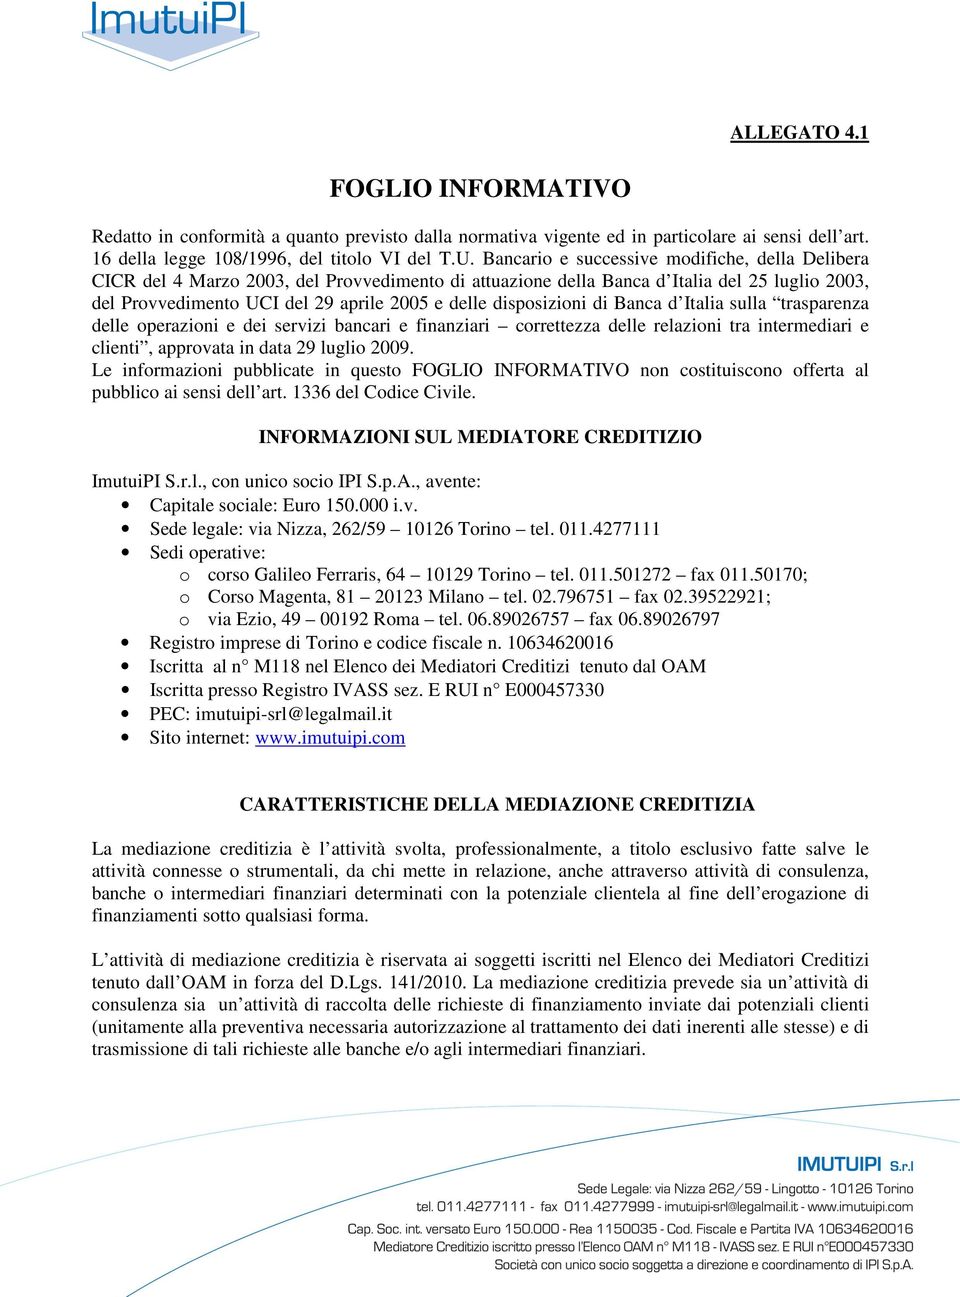 disposizioni di Banca d Italia sulla trasparenza delle operazioni e dei servizi bancari e finanziari correttezza delle relazioni tra intermediari e clienti, approvata in data 29 luglio 2009.